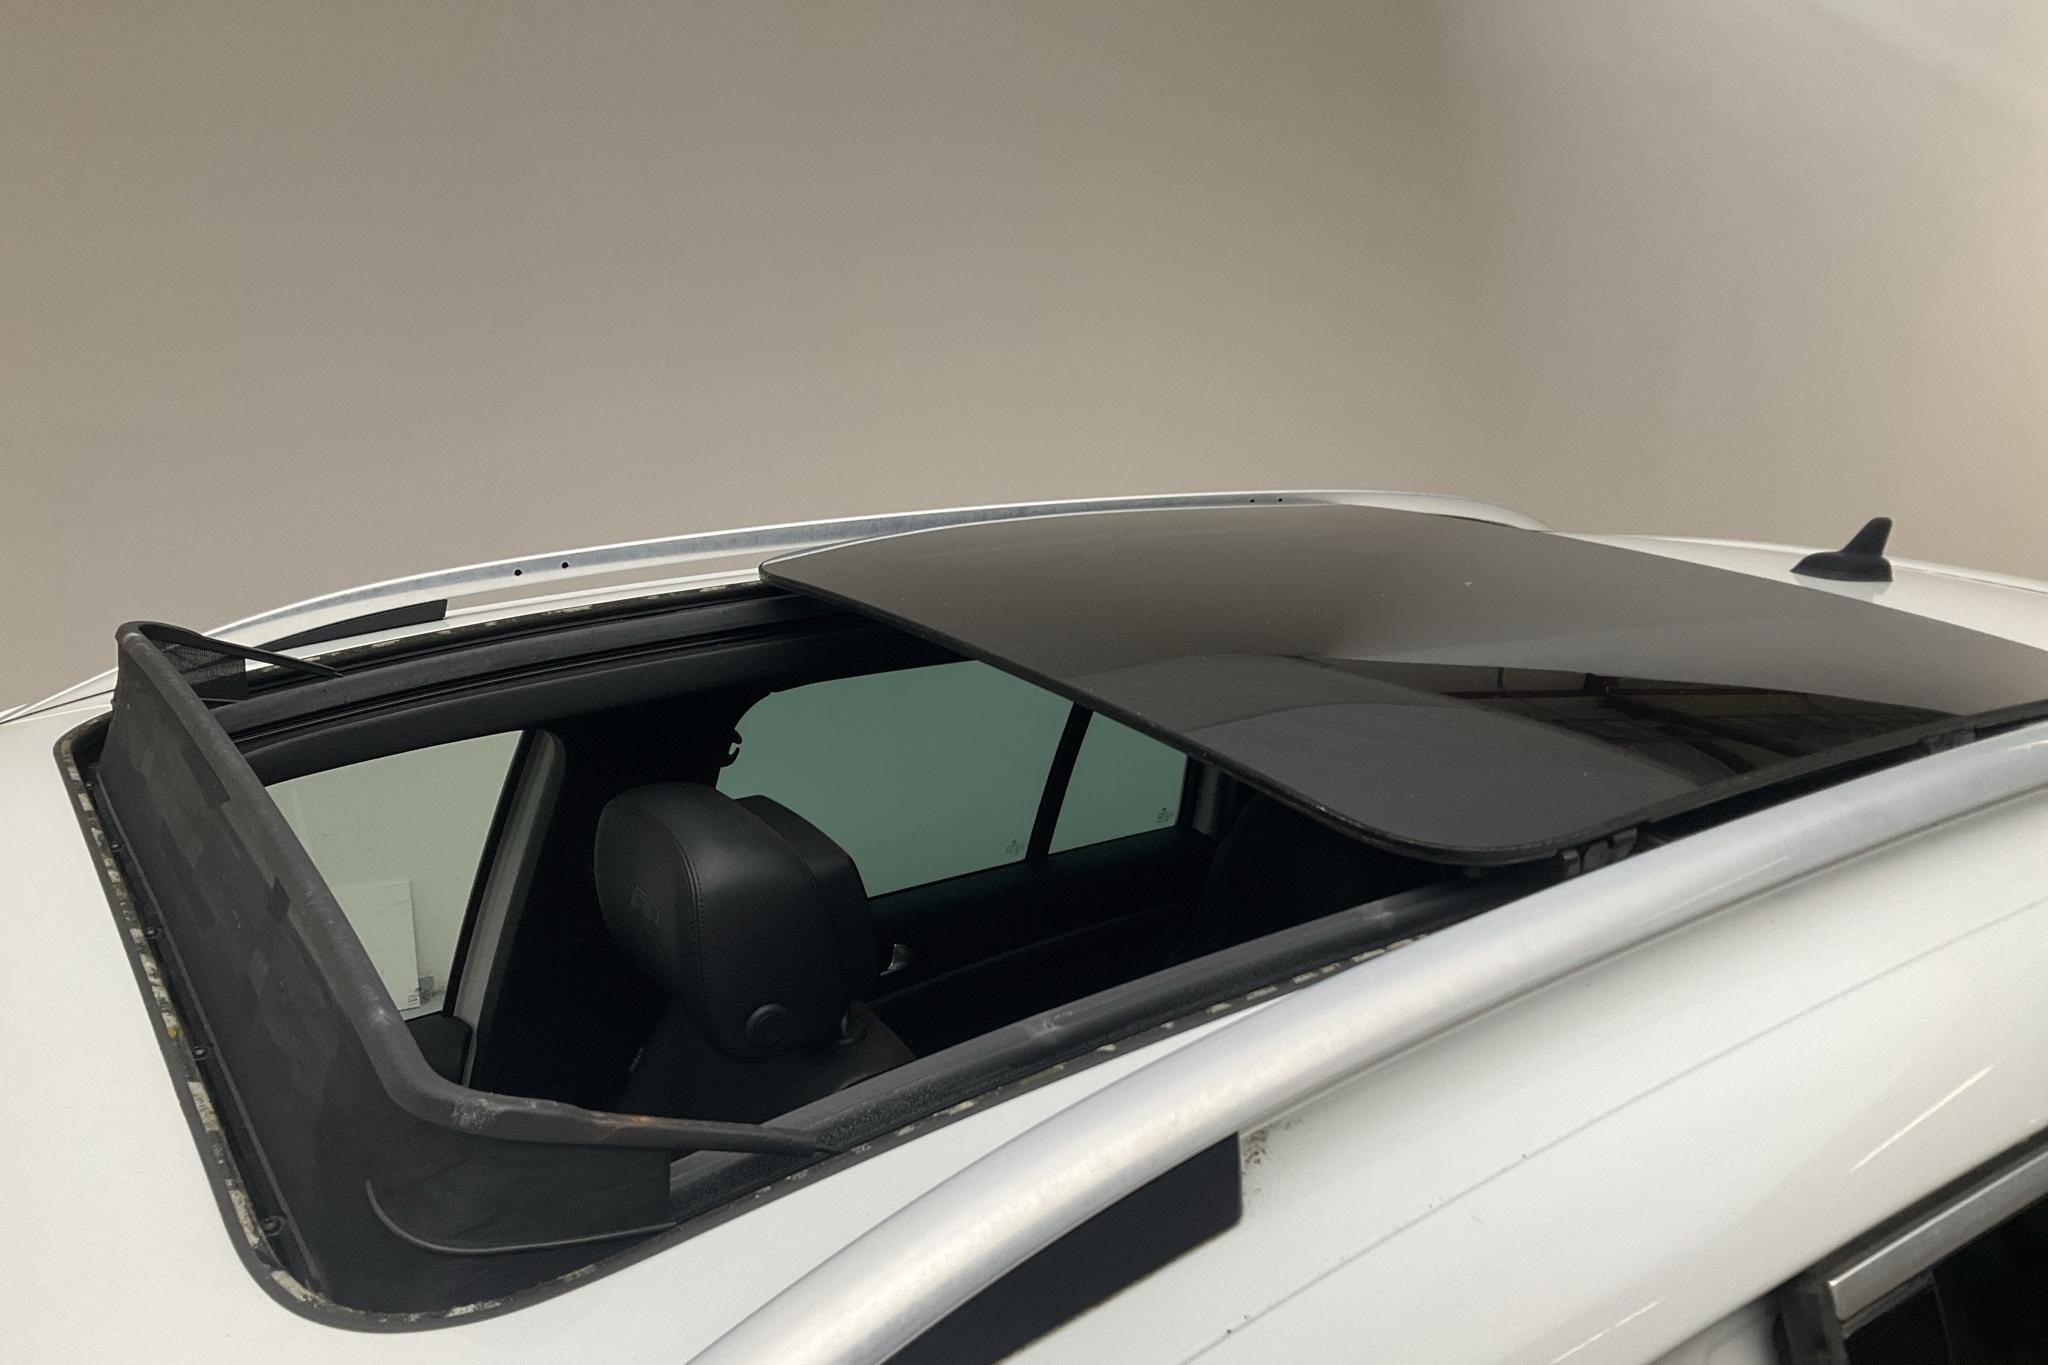 VW Tiguan 1.4 TSI 4MOTION (160hk) - 159 360 km - Manualna - biały - 2015